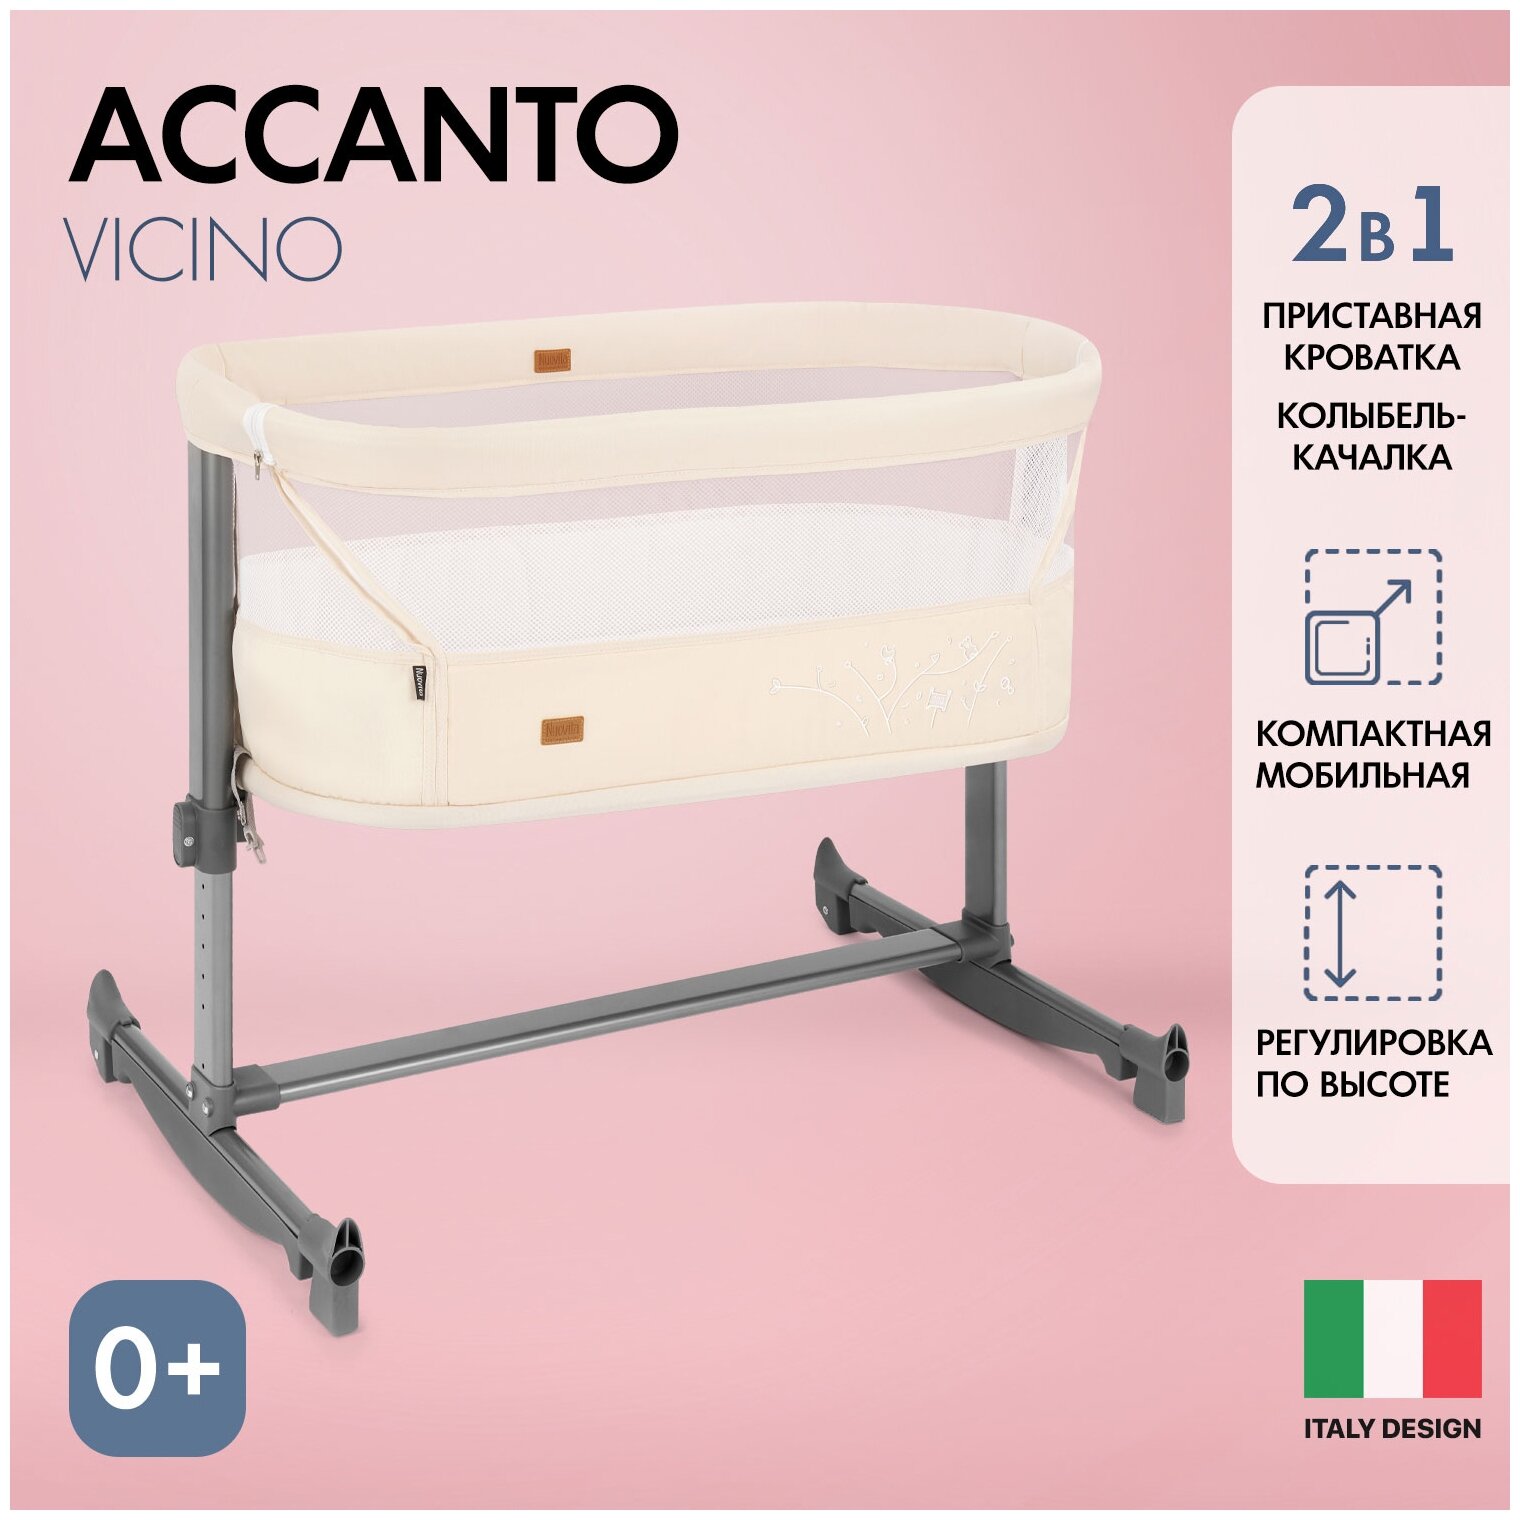 Детская приставная кроватка Nuovita Accanto Vicino Beige/Бежевый